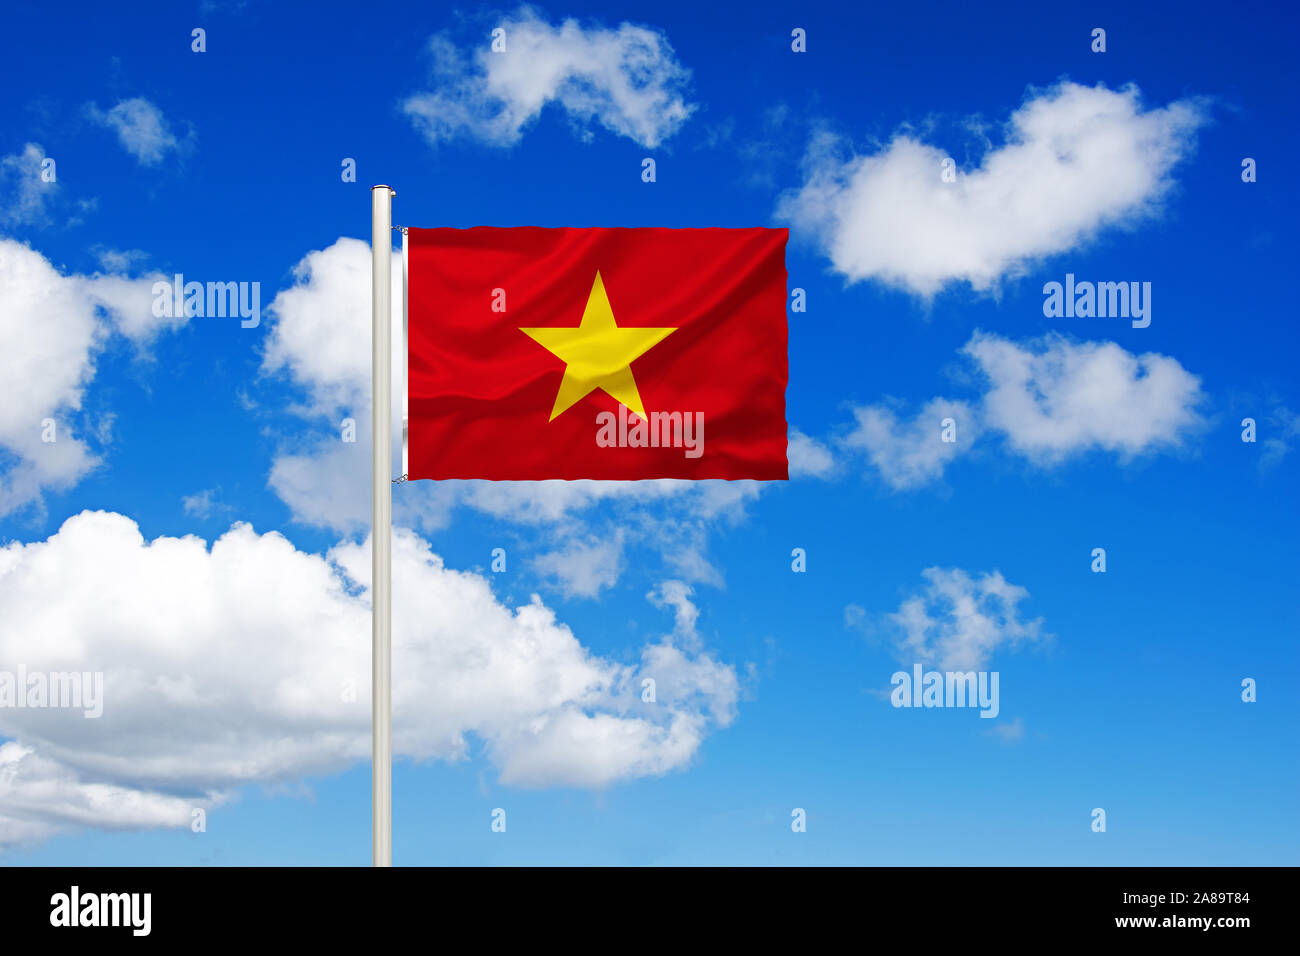 Nationalfahne, Nationalflagge, Fahne, Flagge, Flaggenmast, Cumulus Wolken vor blauen Himmel, Foto Stock